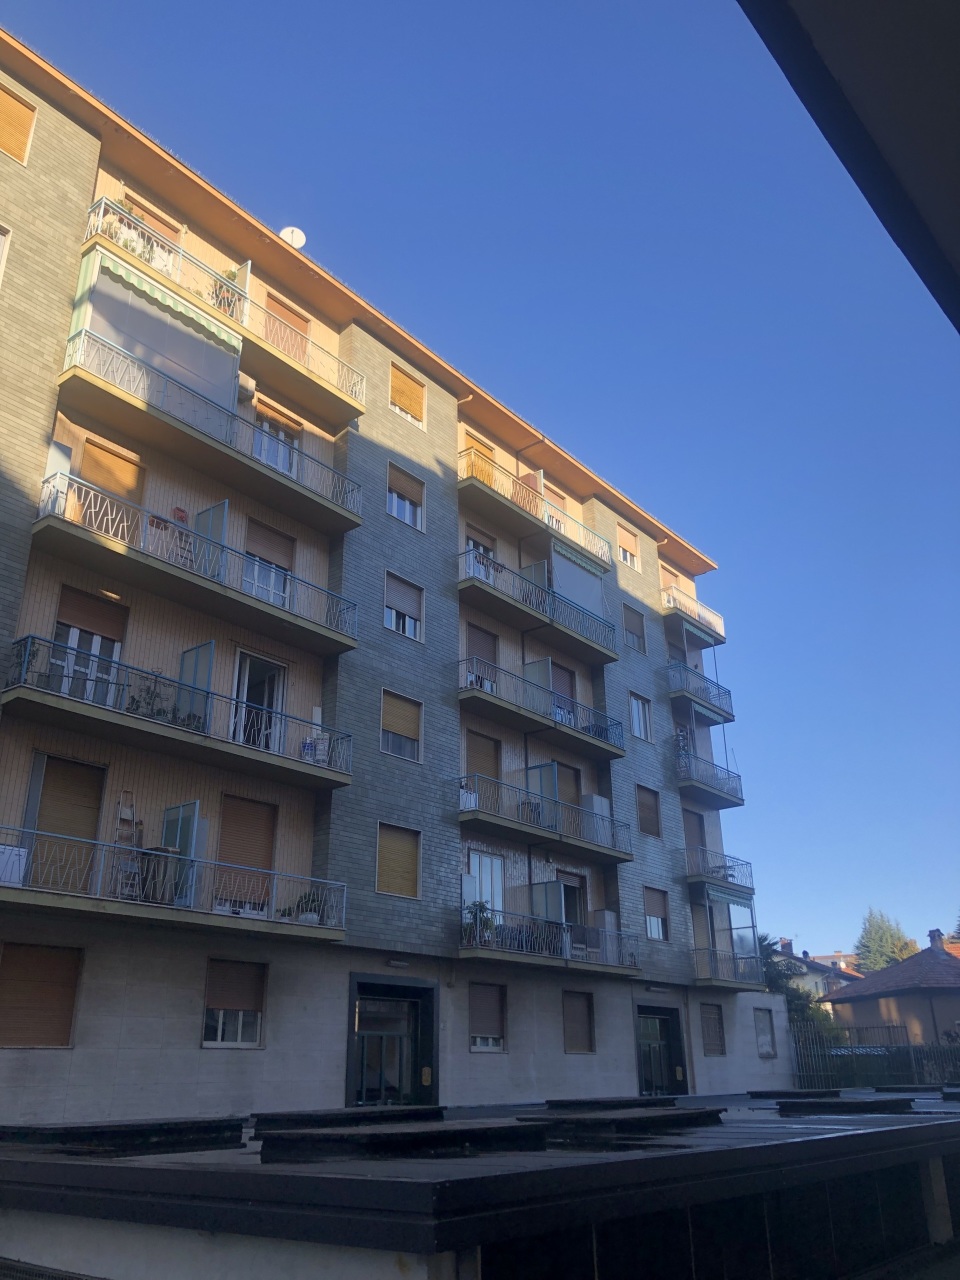 Appartamento in vendita a Rivoli, 45 locali, prezzo € 140.000 | PortaleAgenzieImmobiliari.it